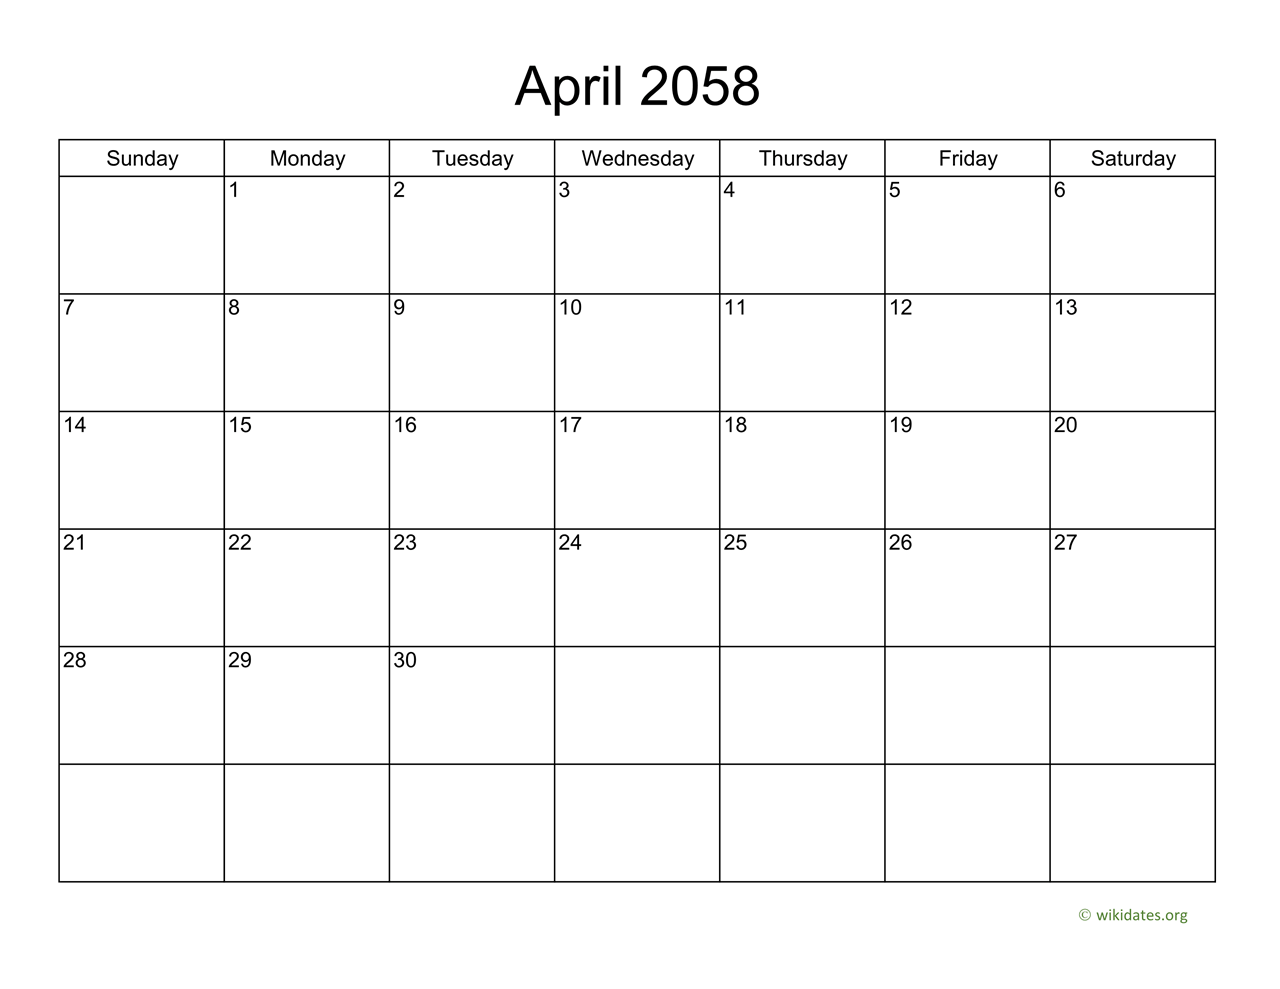 Basic Calendar For April 2058